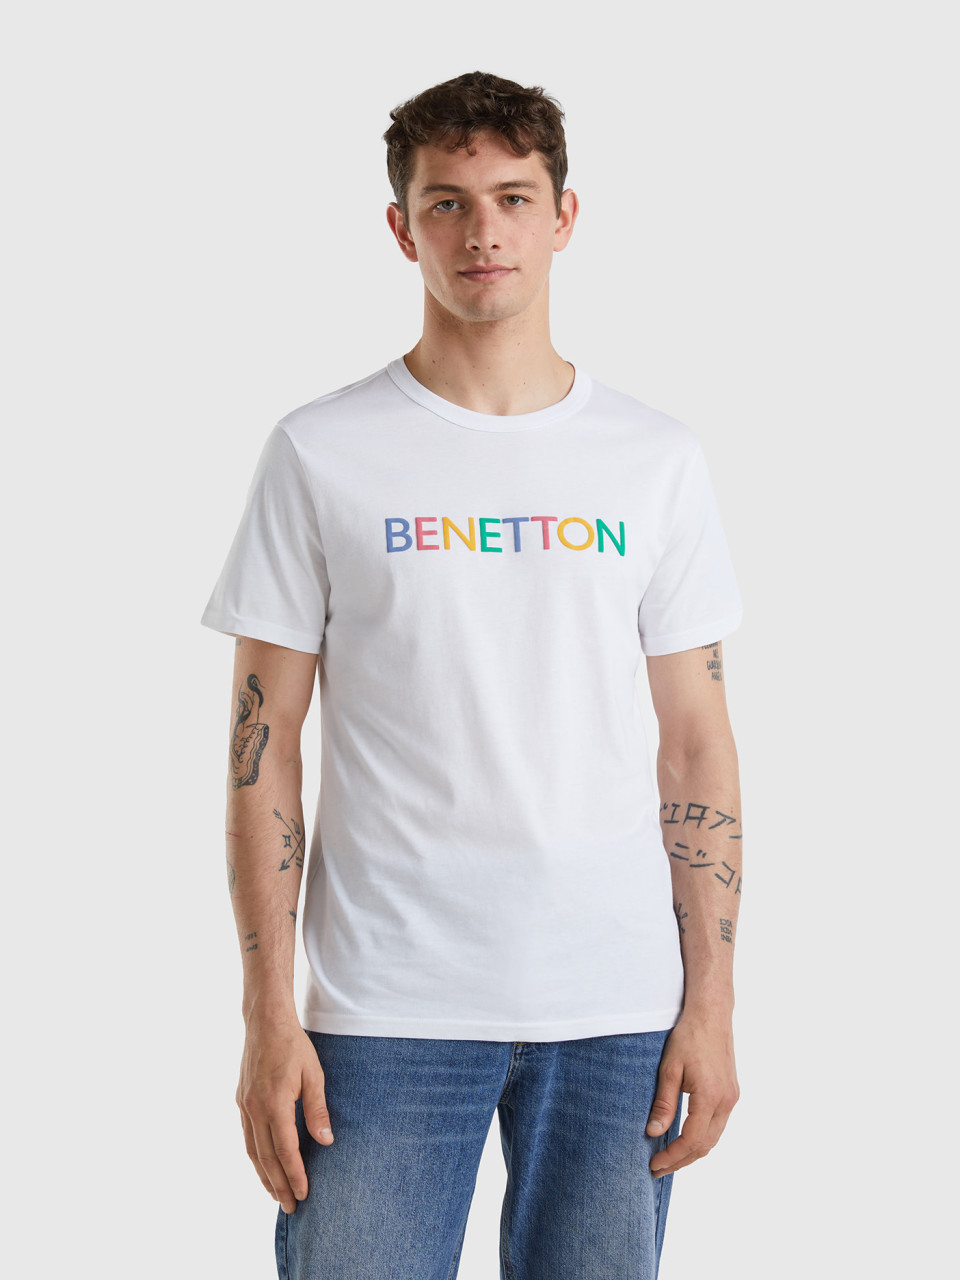 Benetton, T-shirt Bianca In Cotone Bio Con Logo Multicolor, Bianco, Uomo